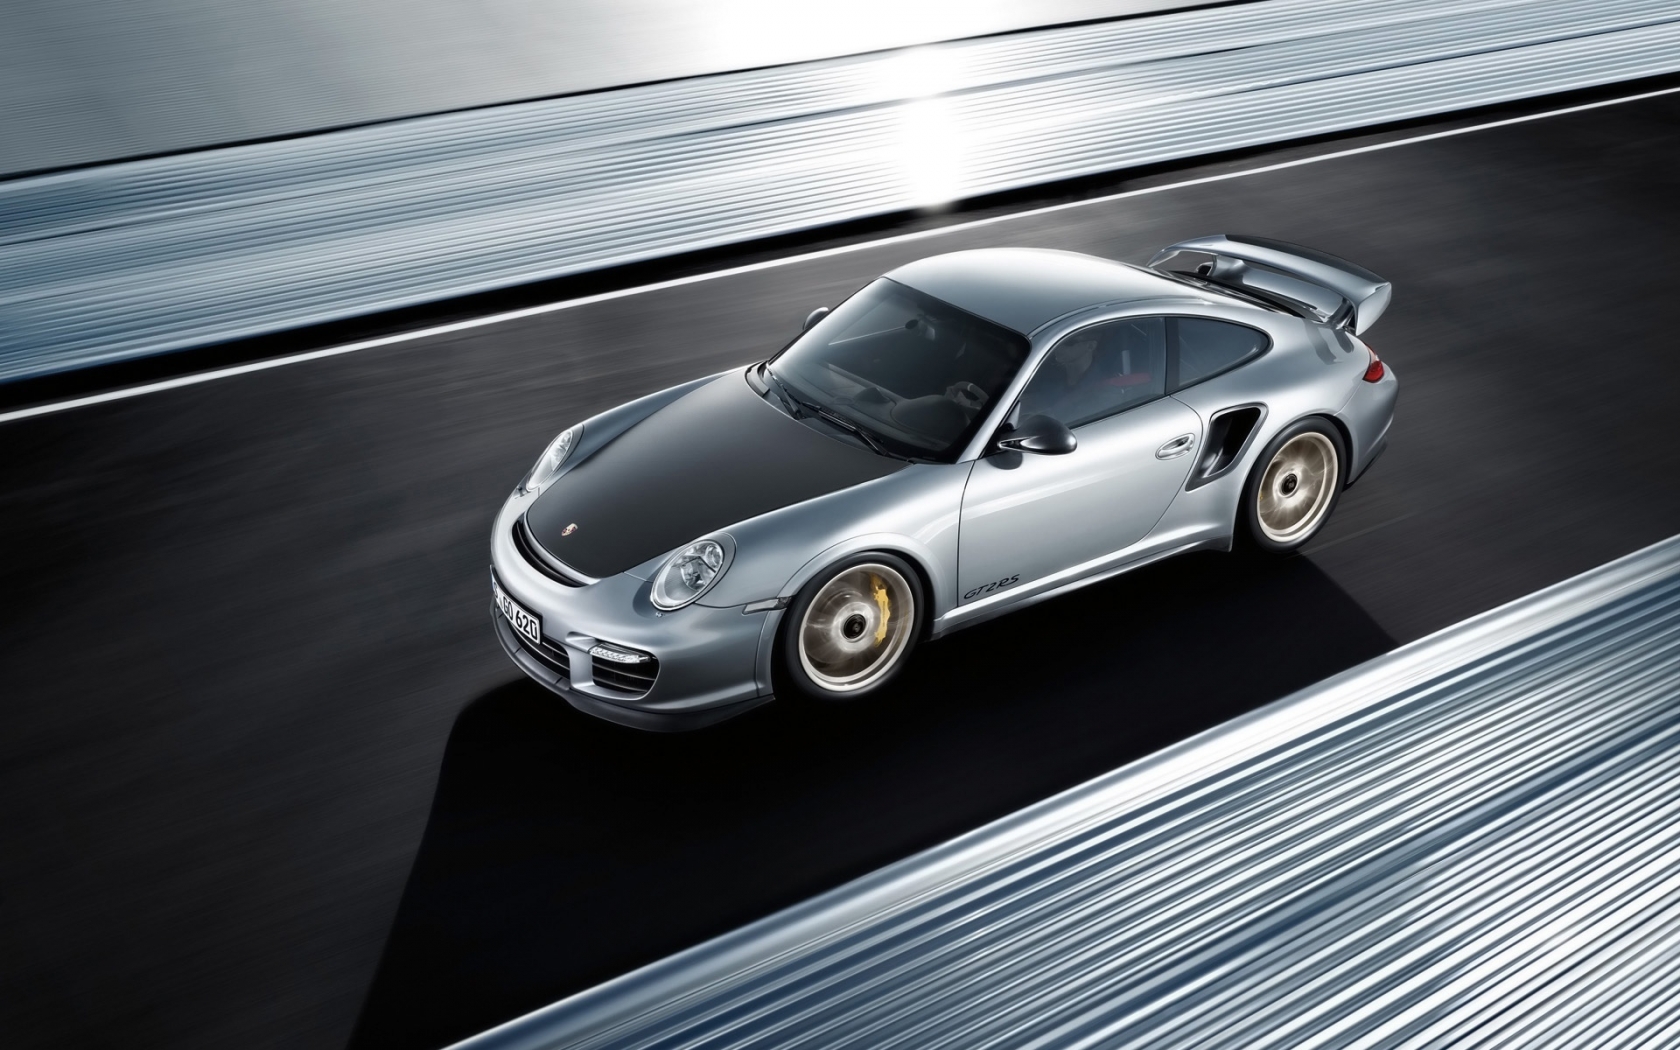 Porsche 911 GT2 RS 2011 for 1680 x 1050 widescreen resolution